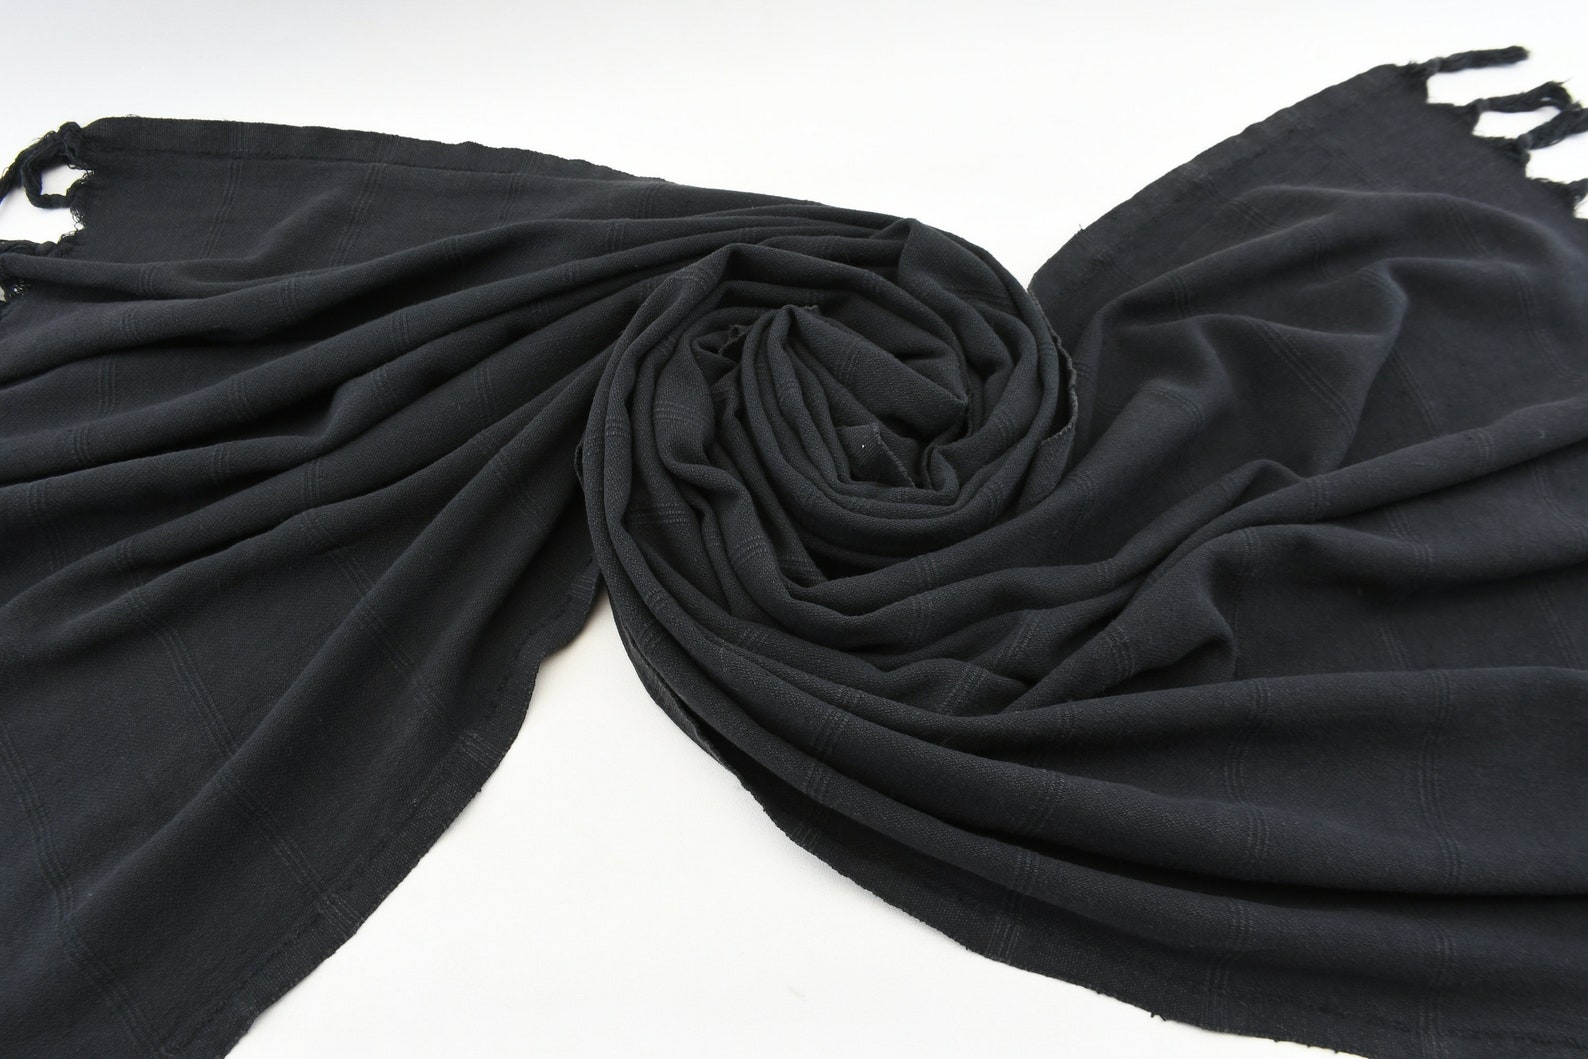 Black Stone Washed Towel85x170cmturkish Peshtemalultra Soft - Etsy